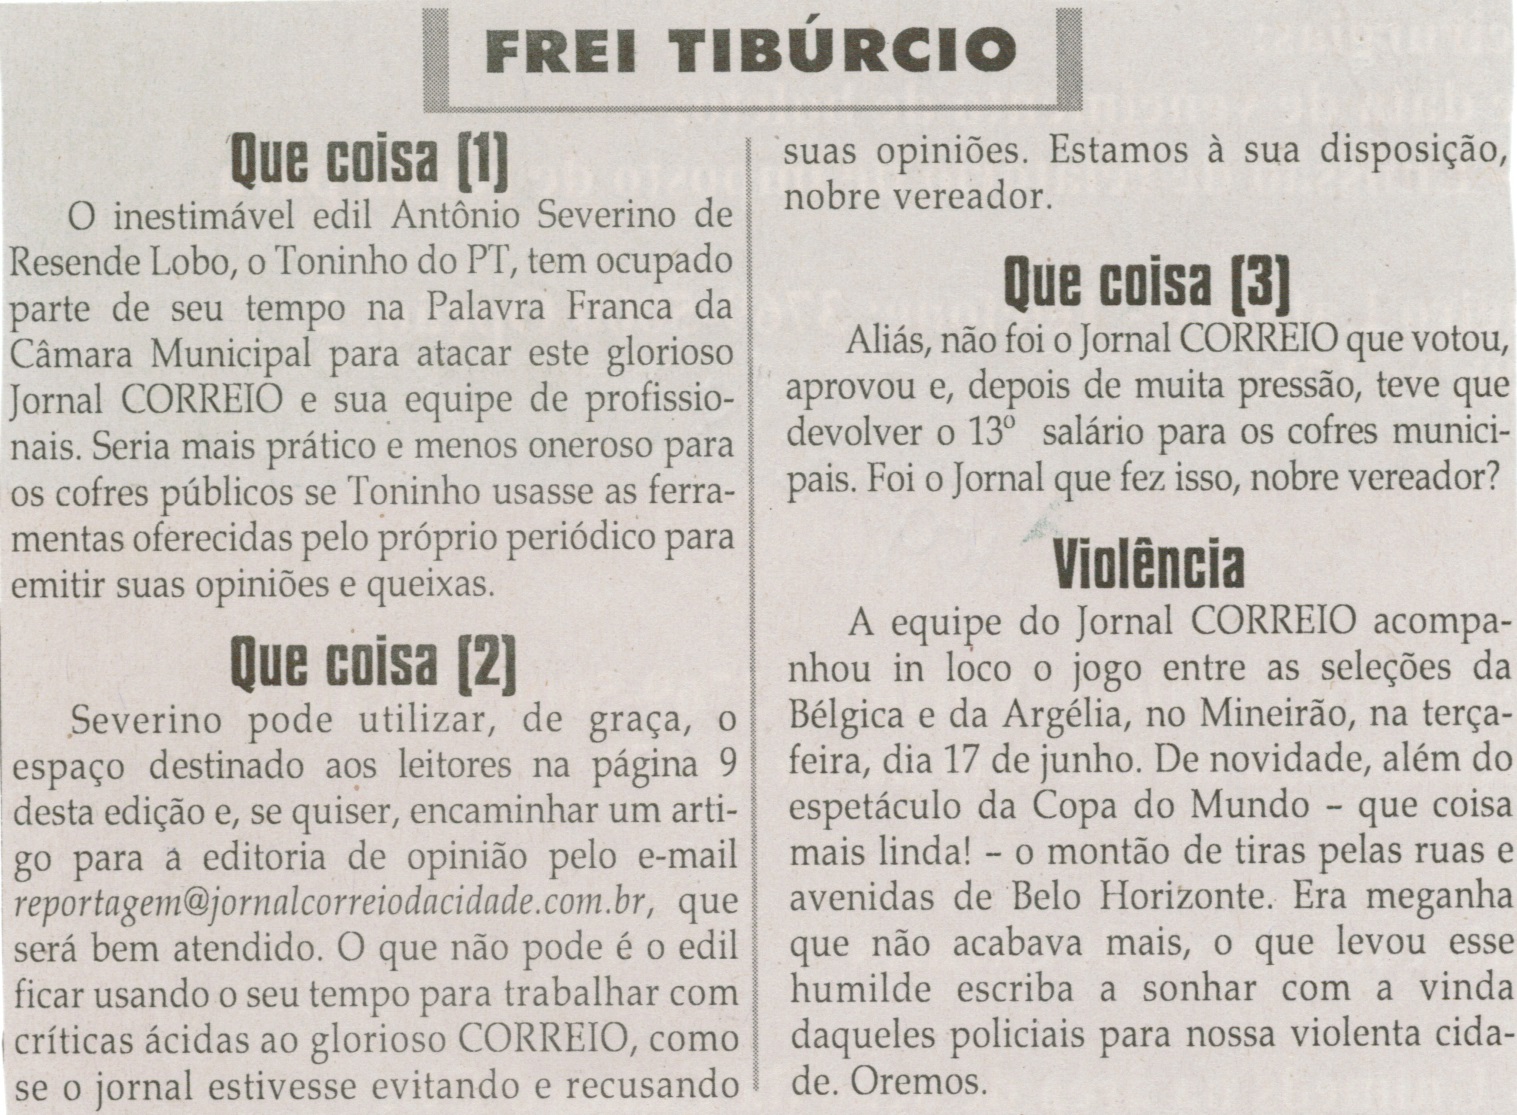  Que coisa [1]; Que coisa [2];  Que coisa [3]. Jornal Correio da Cidade, Conselheiro Lafaiete, 26 jun. 2014, Frei Tibúrcio, p. 8.